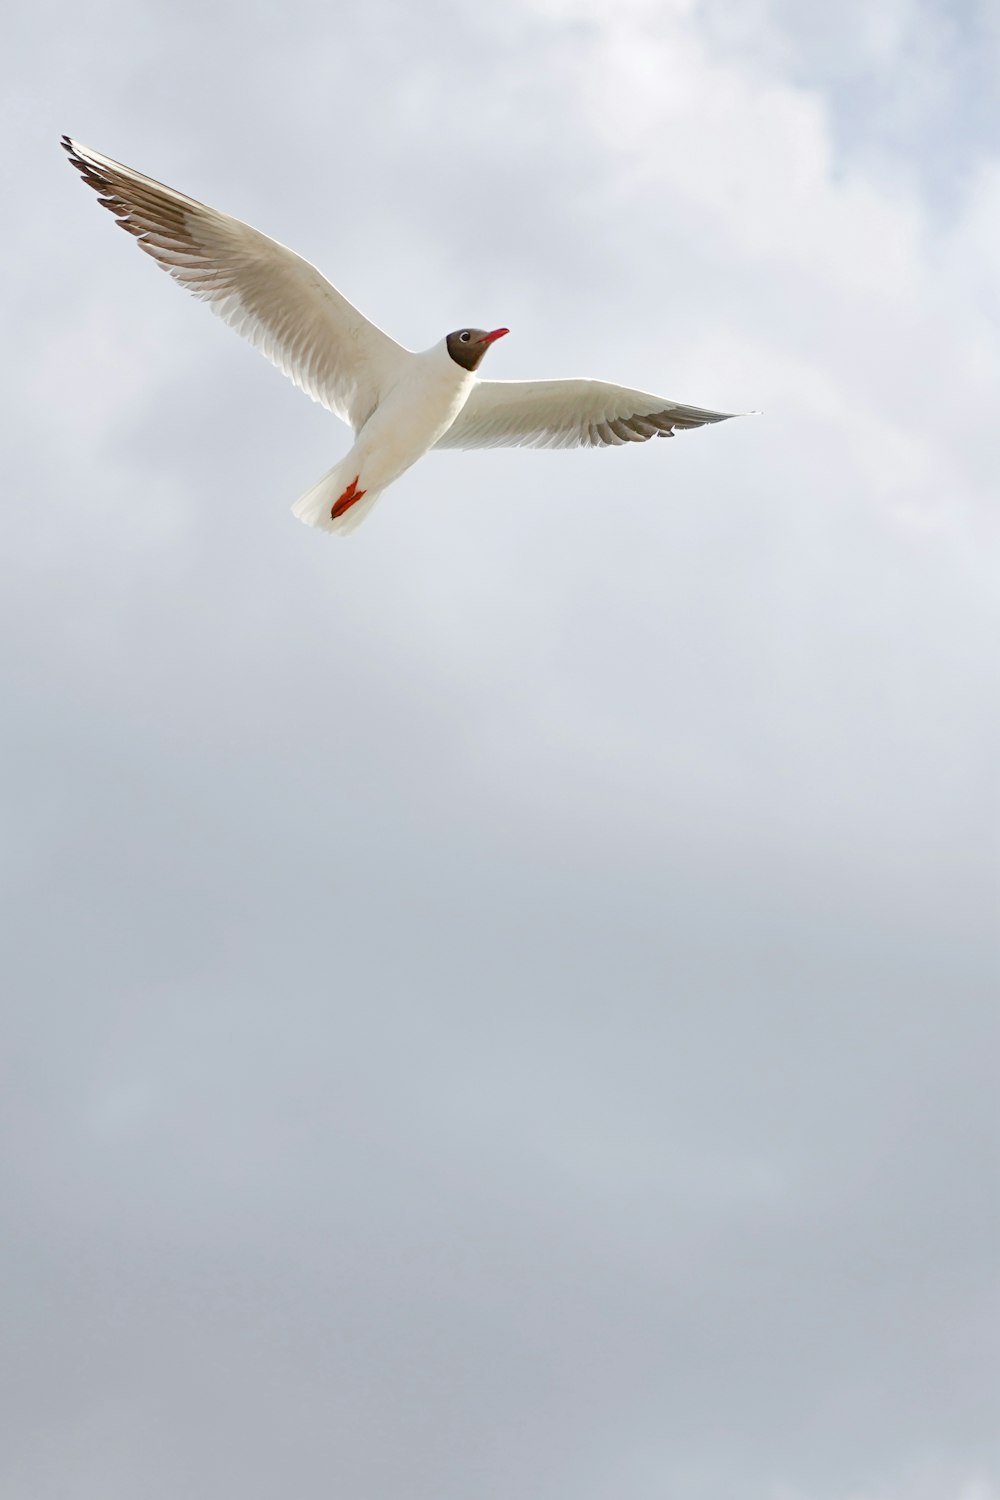 a white bird flying through a cloudy sky